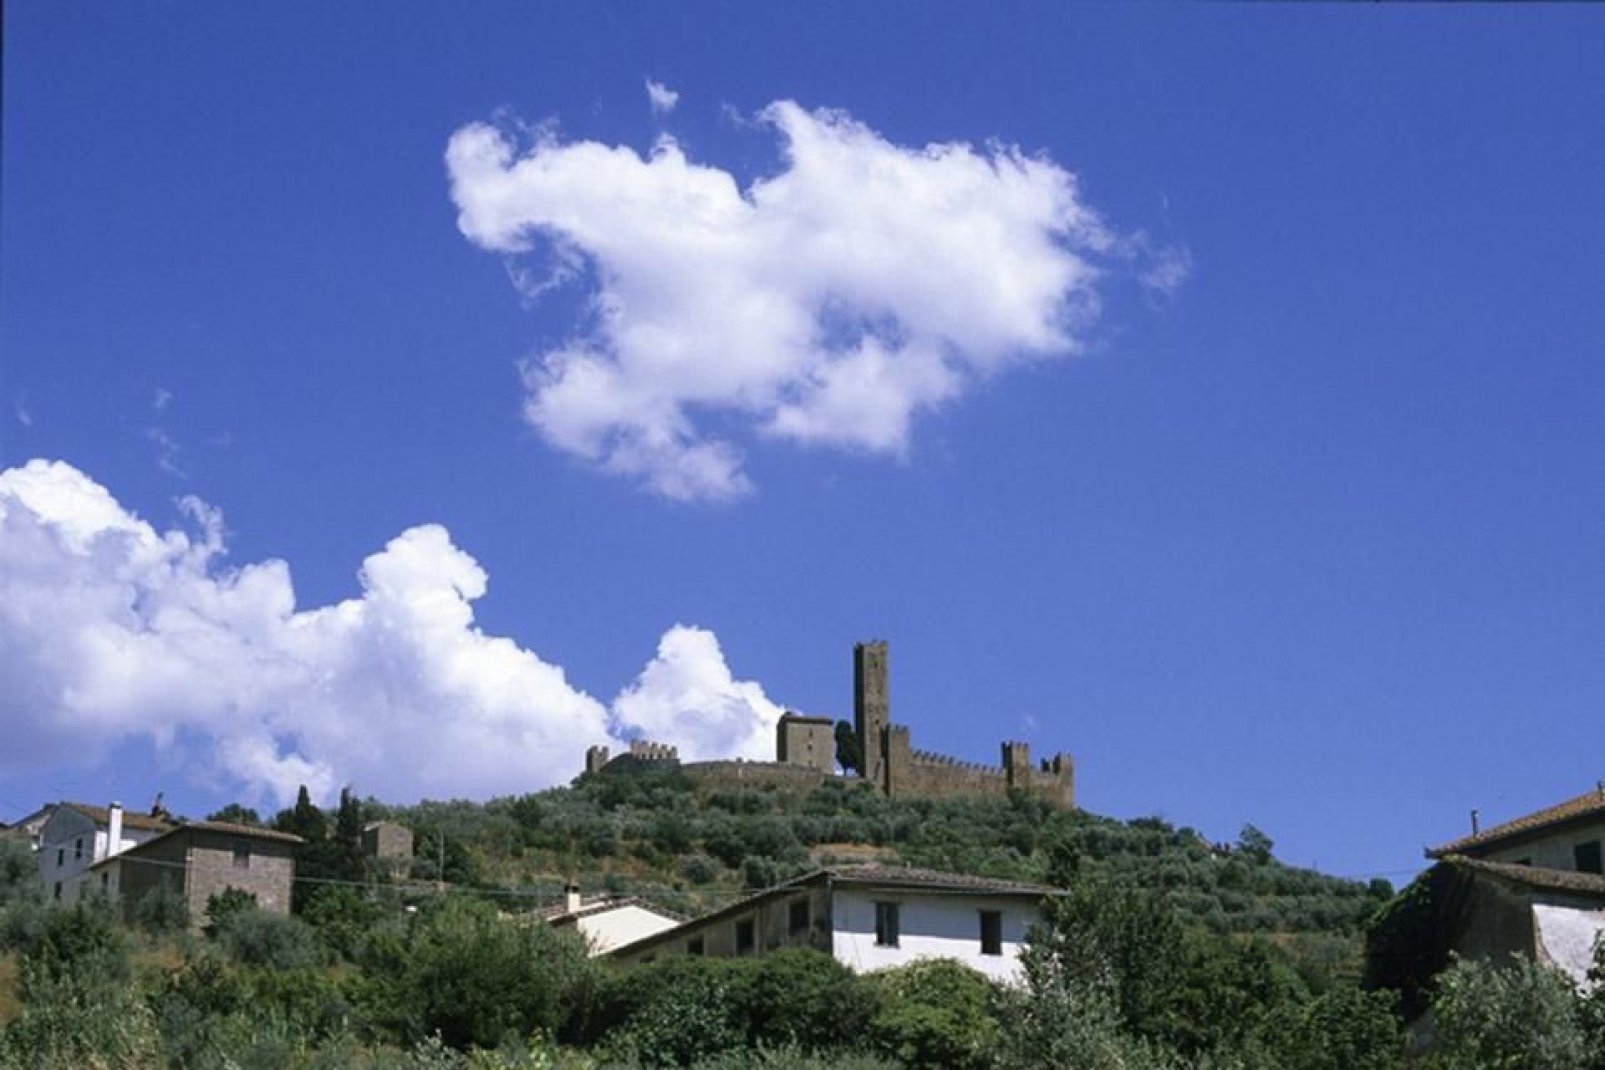 Das Gebiet rund um Arezzo birgt zahlreiche Pfarrkirchen, Schlösser und mittelalterliche Städtchen.  Besonders zu erwähnen wäre z.B. Poppi, das zu den schönsten Dörfern von Italien gehört.